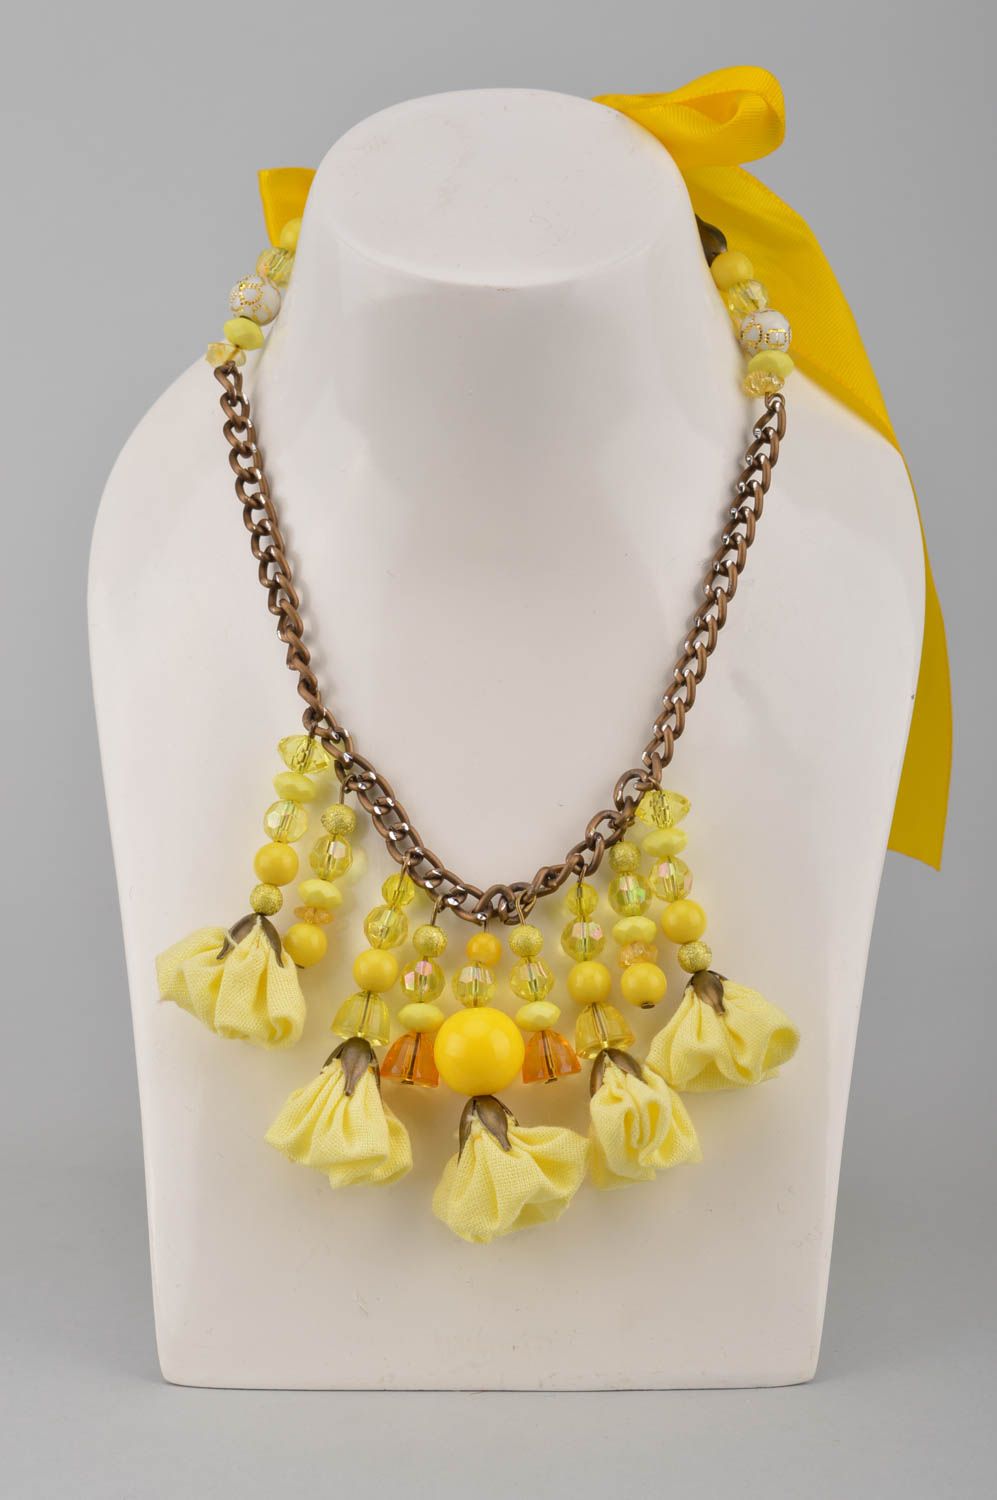 Ожерелье на цепочке с цветами и бусинами нарядное в желтых тонах ручная работа фото 1